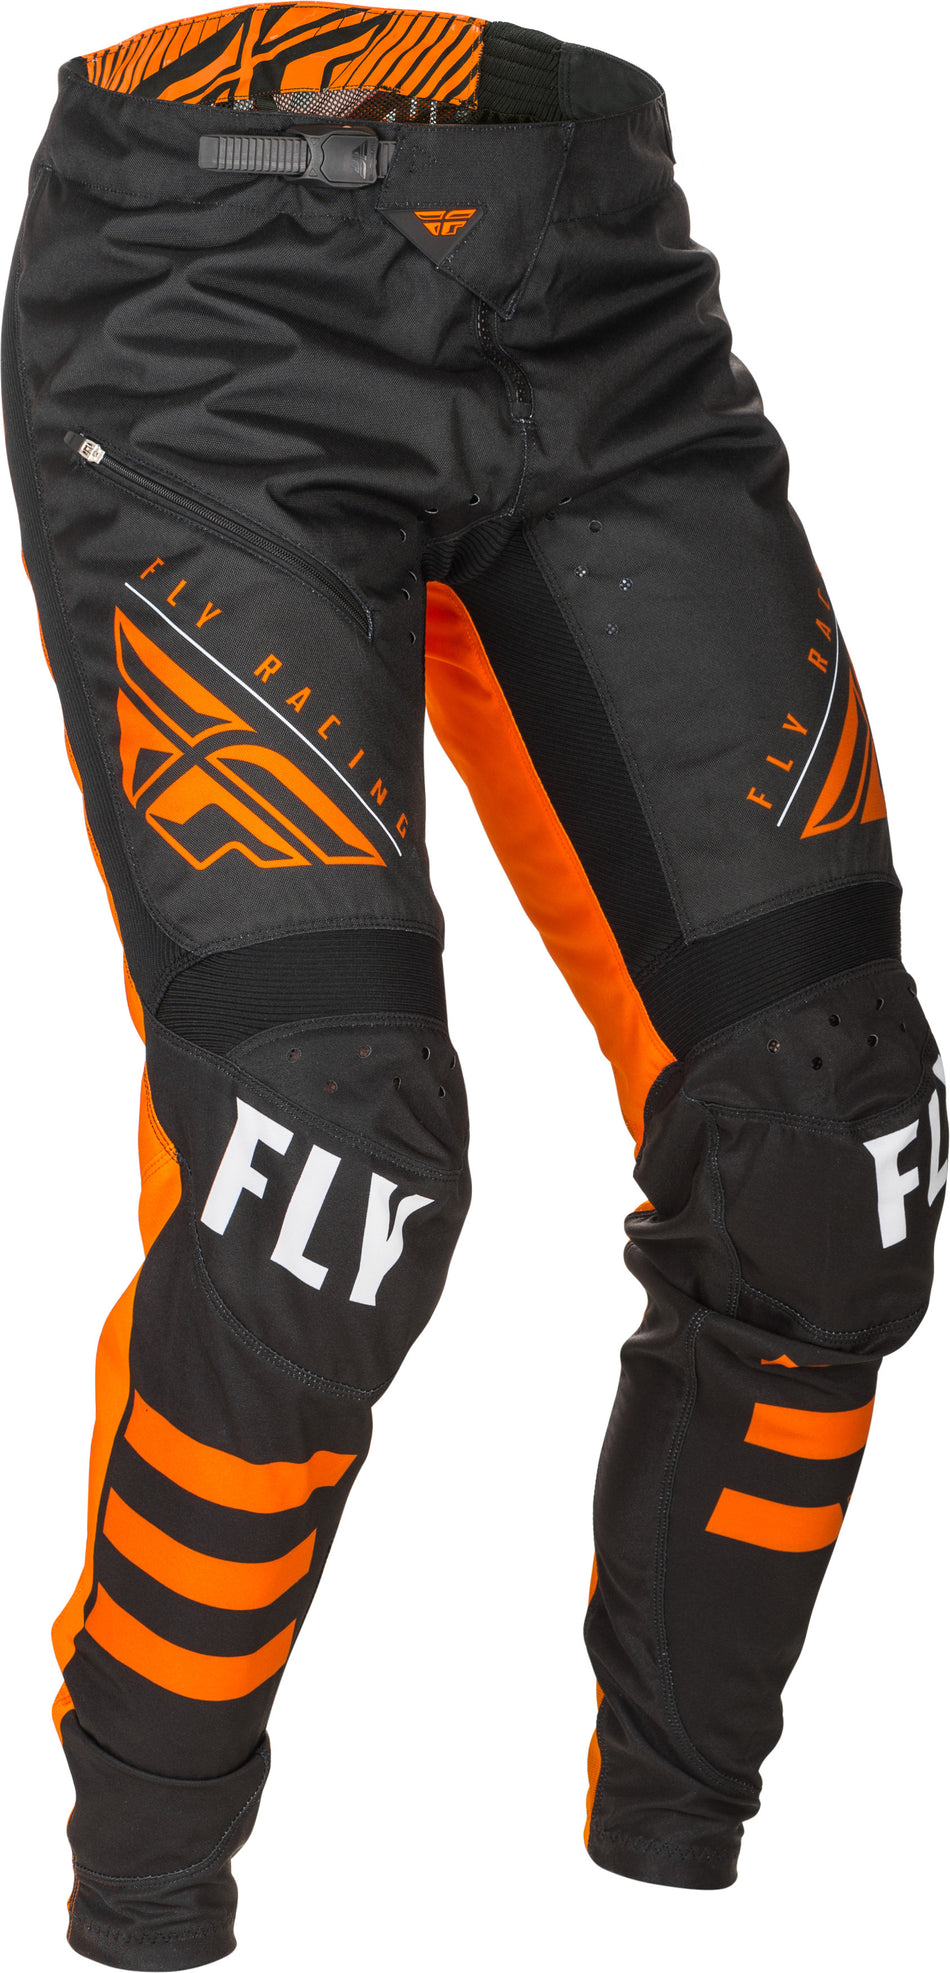 FLY RACING Kinetic Bicycle Pants Black/Orange Sz 18 373-04718